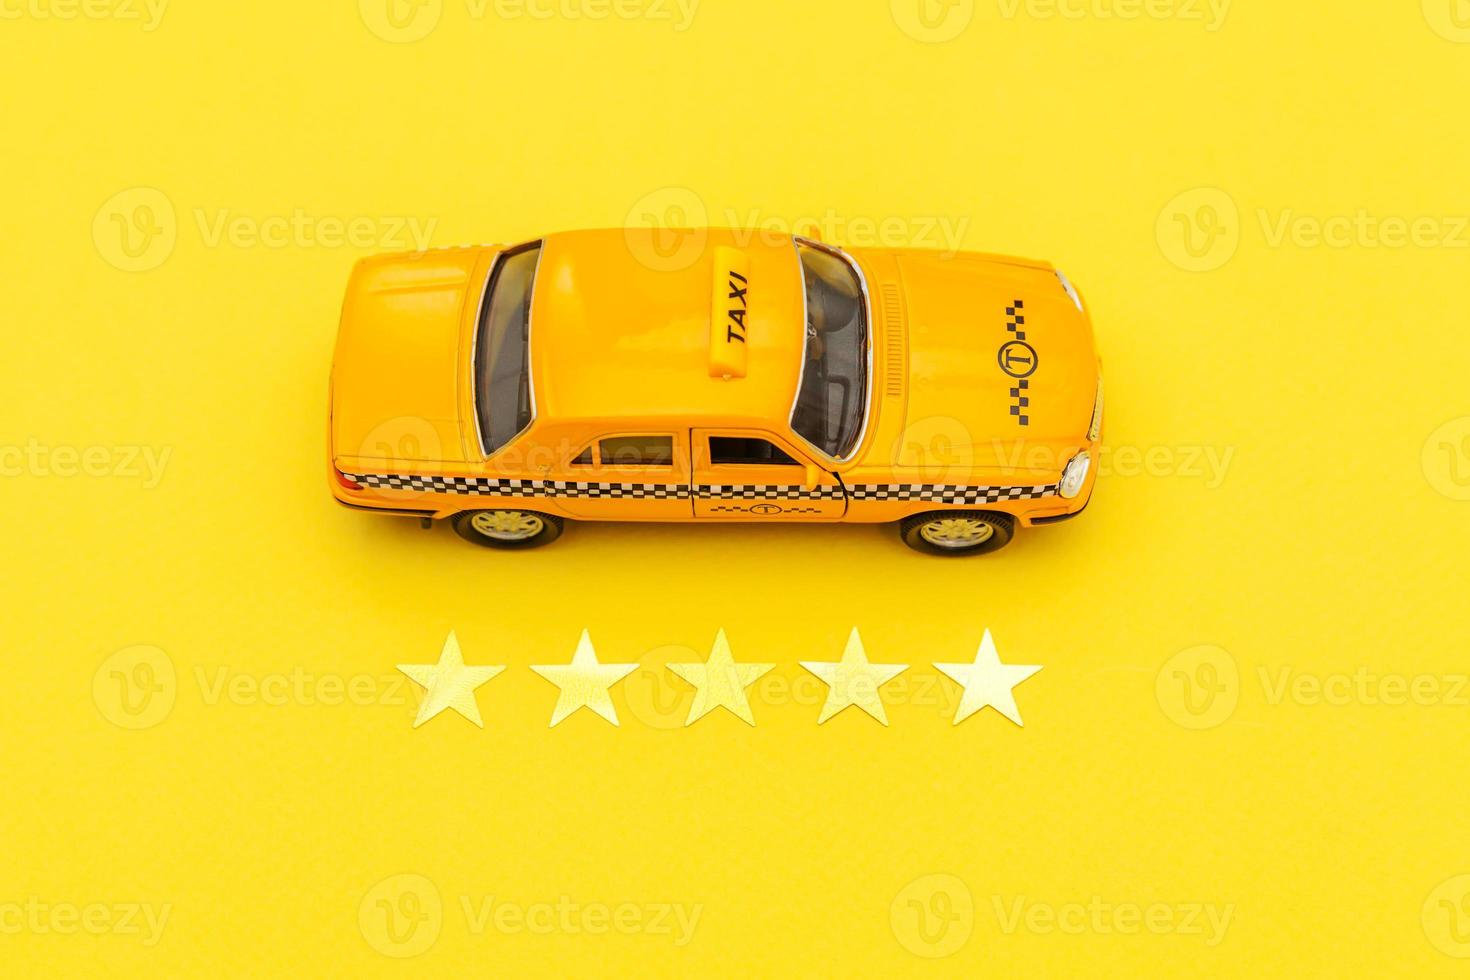 gul leksaksbil taxi cab och 5 stjärnor betyg isolerad på gul bakgrund. smartphoneapplikation av taxitjänst för onlinesökning, ringa och boka taxikoncept. taxi symbol. kopieringsutrymme. foto